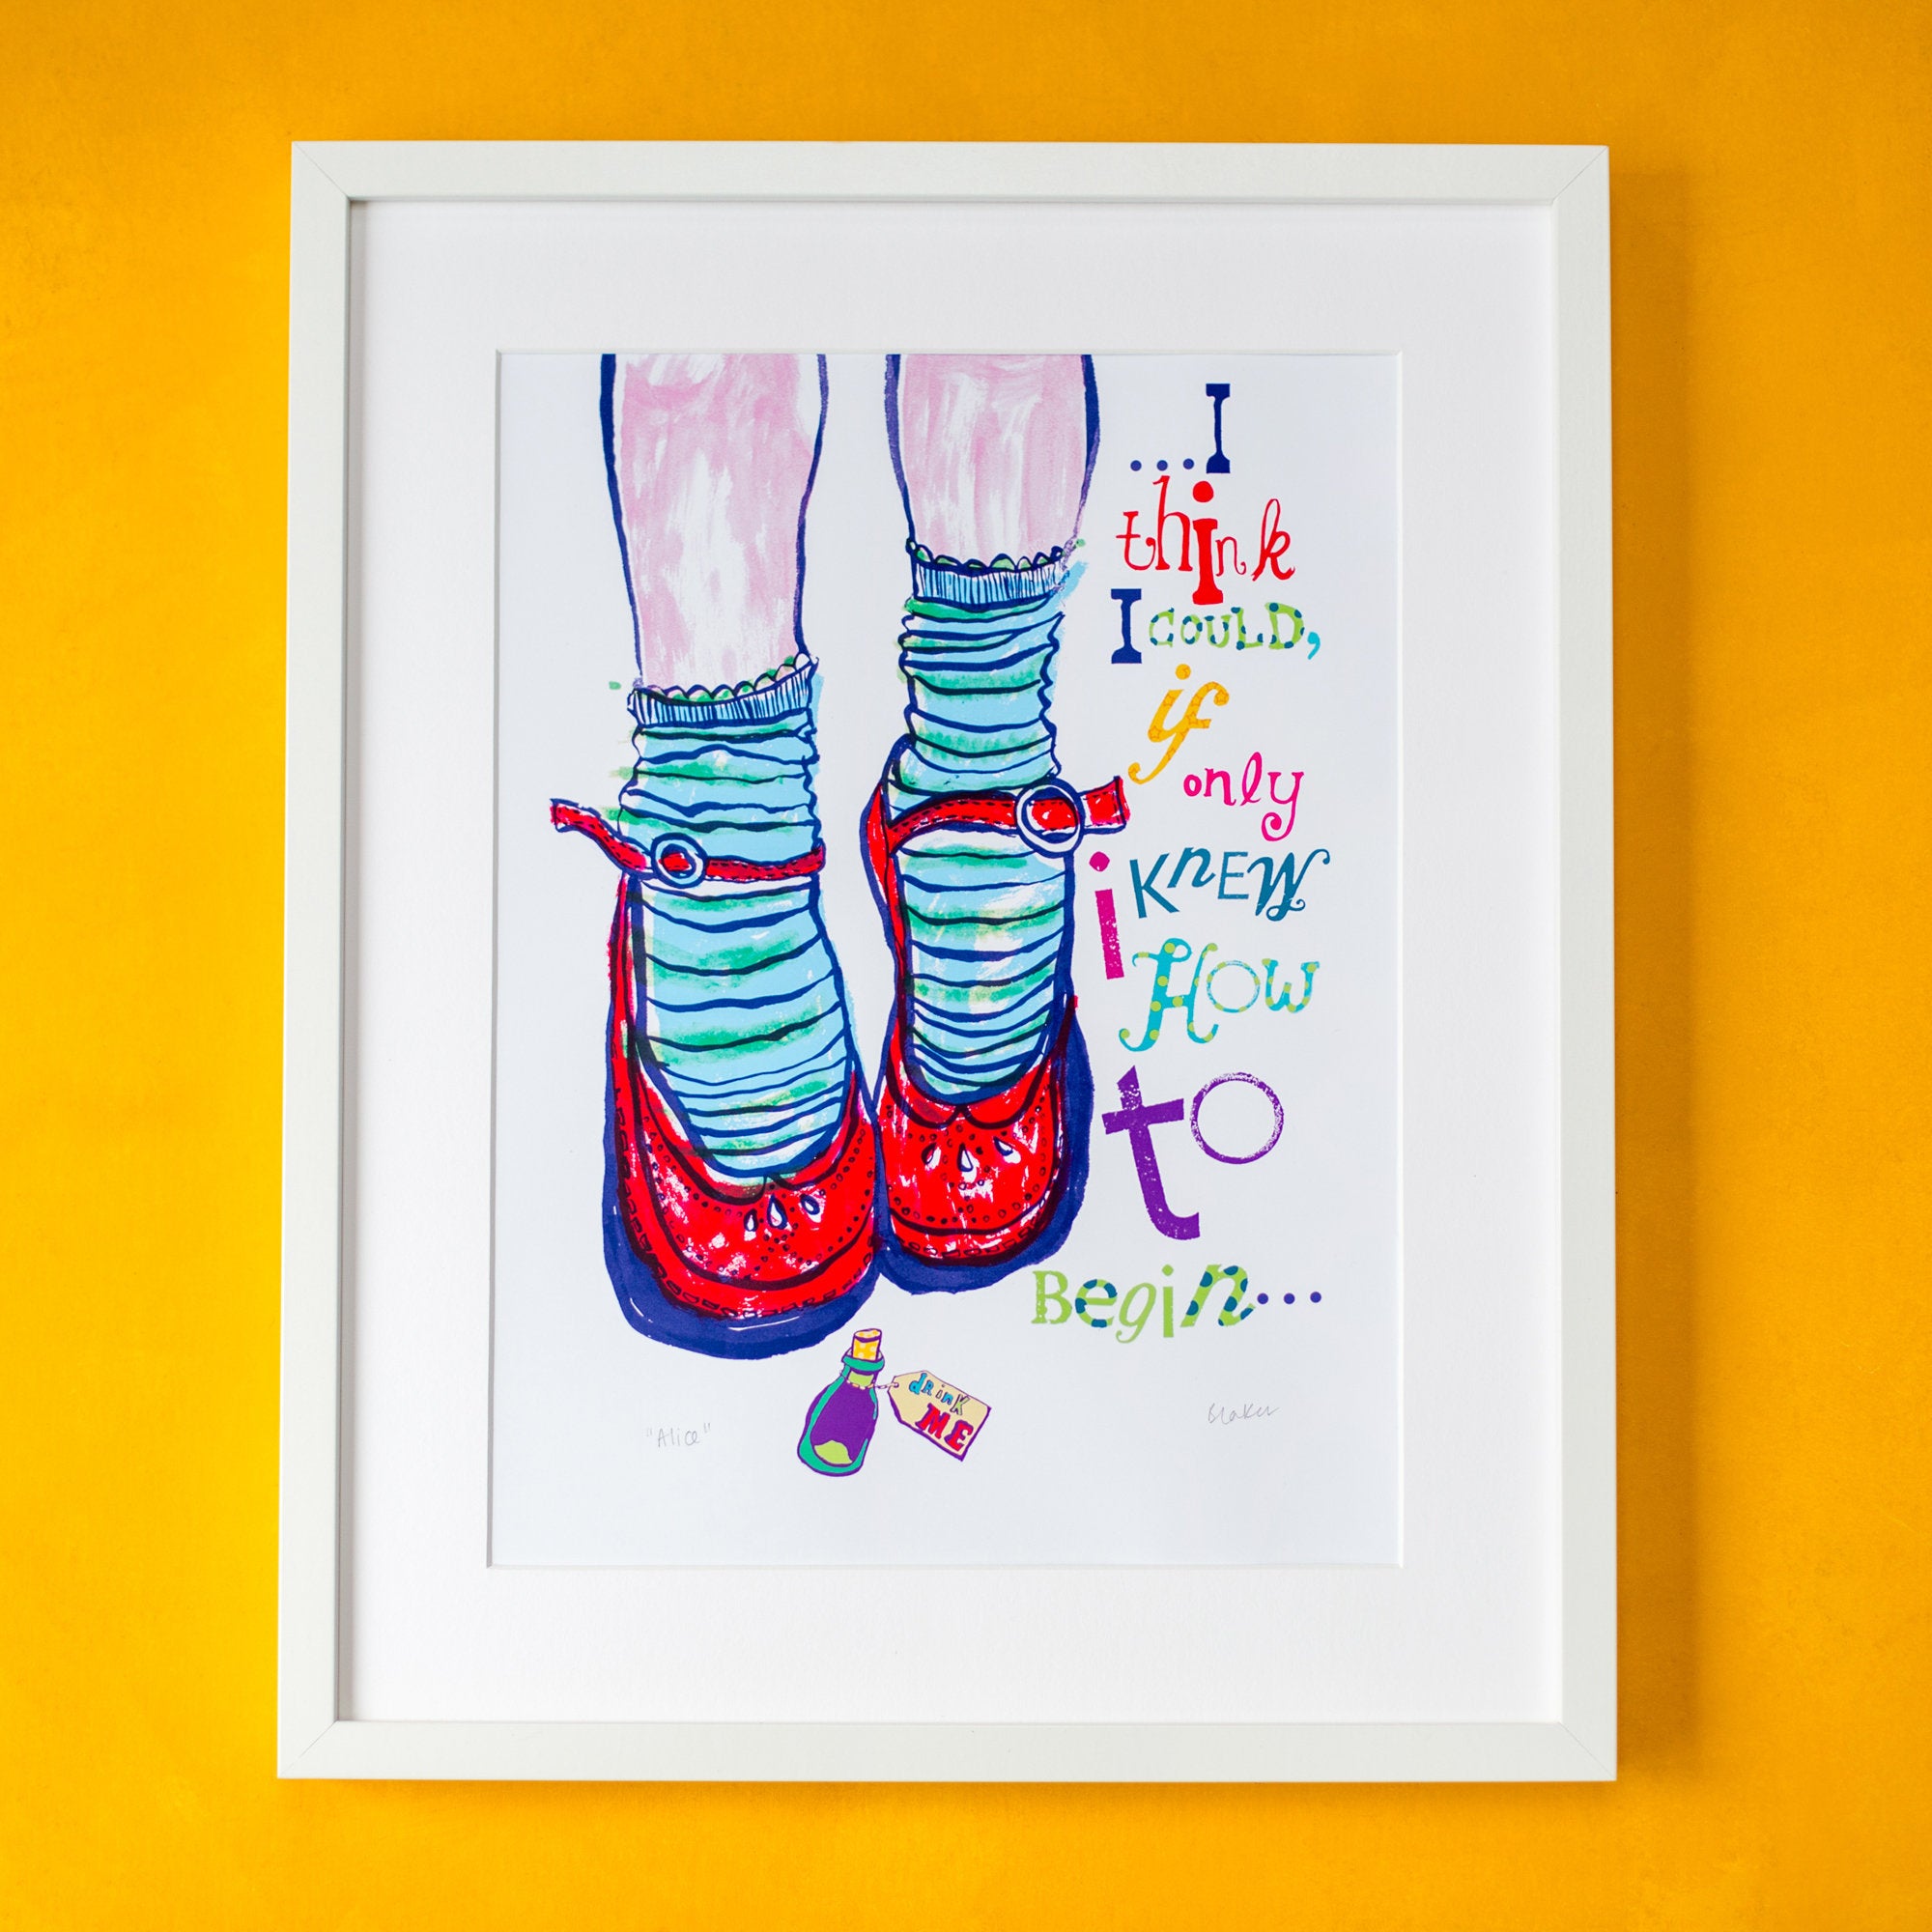 'Alice' print – inspired by Alice in Wonderland